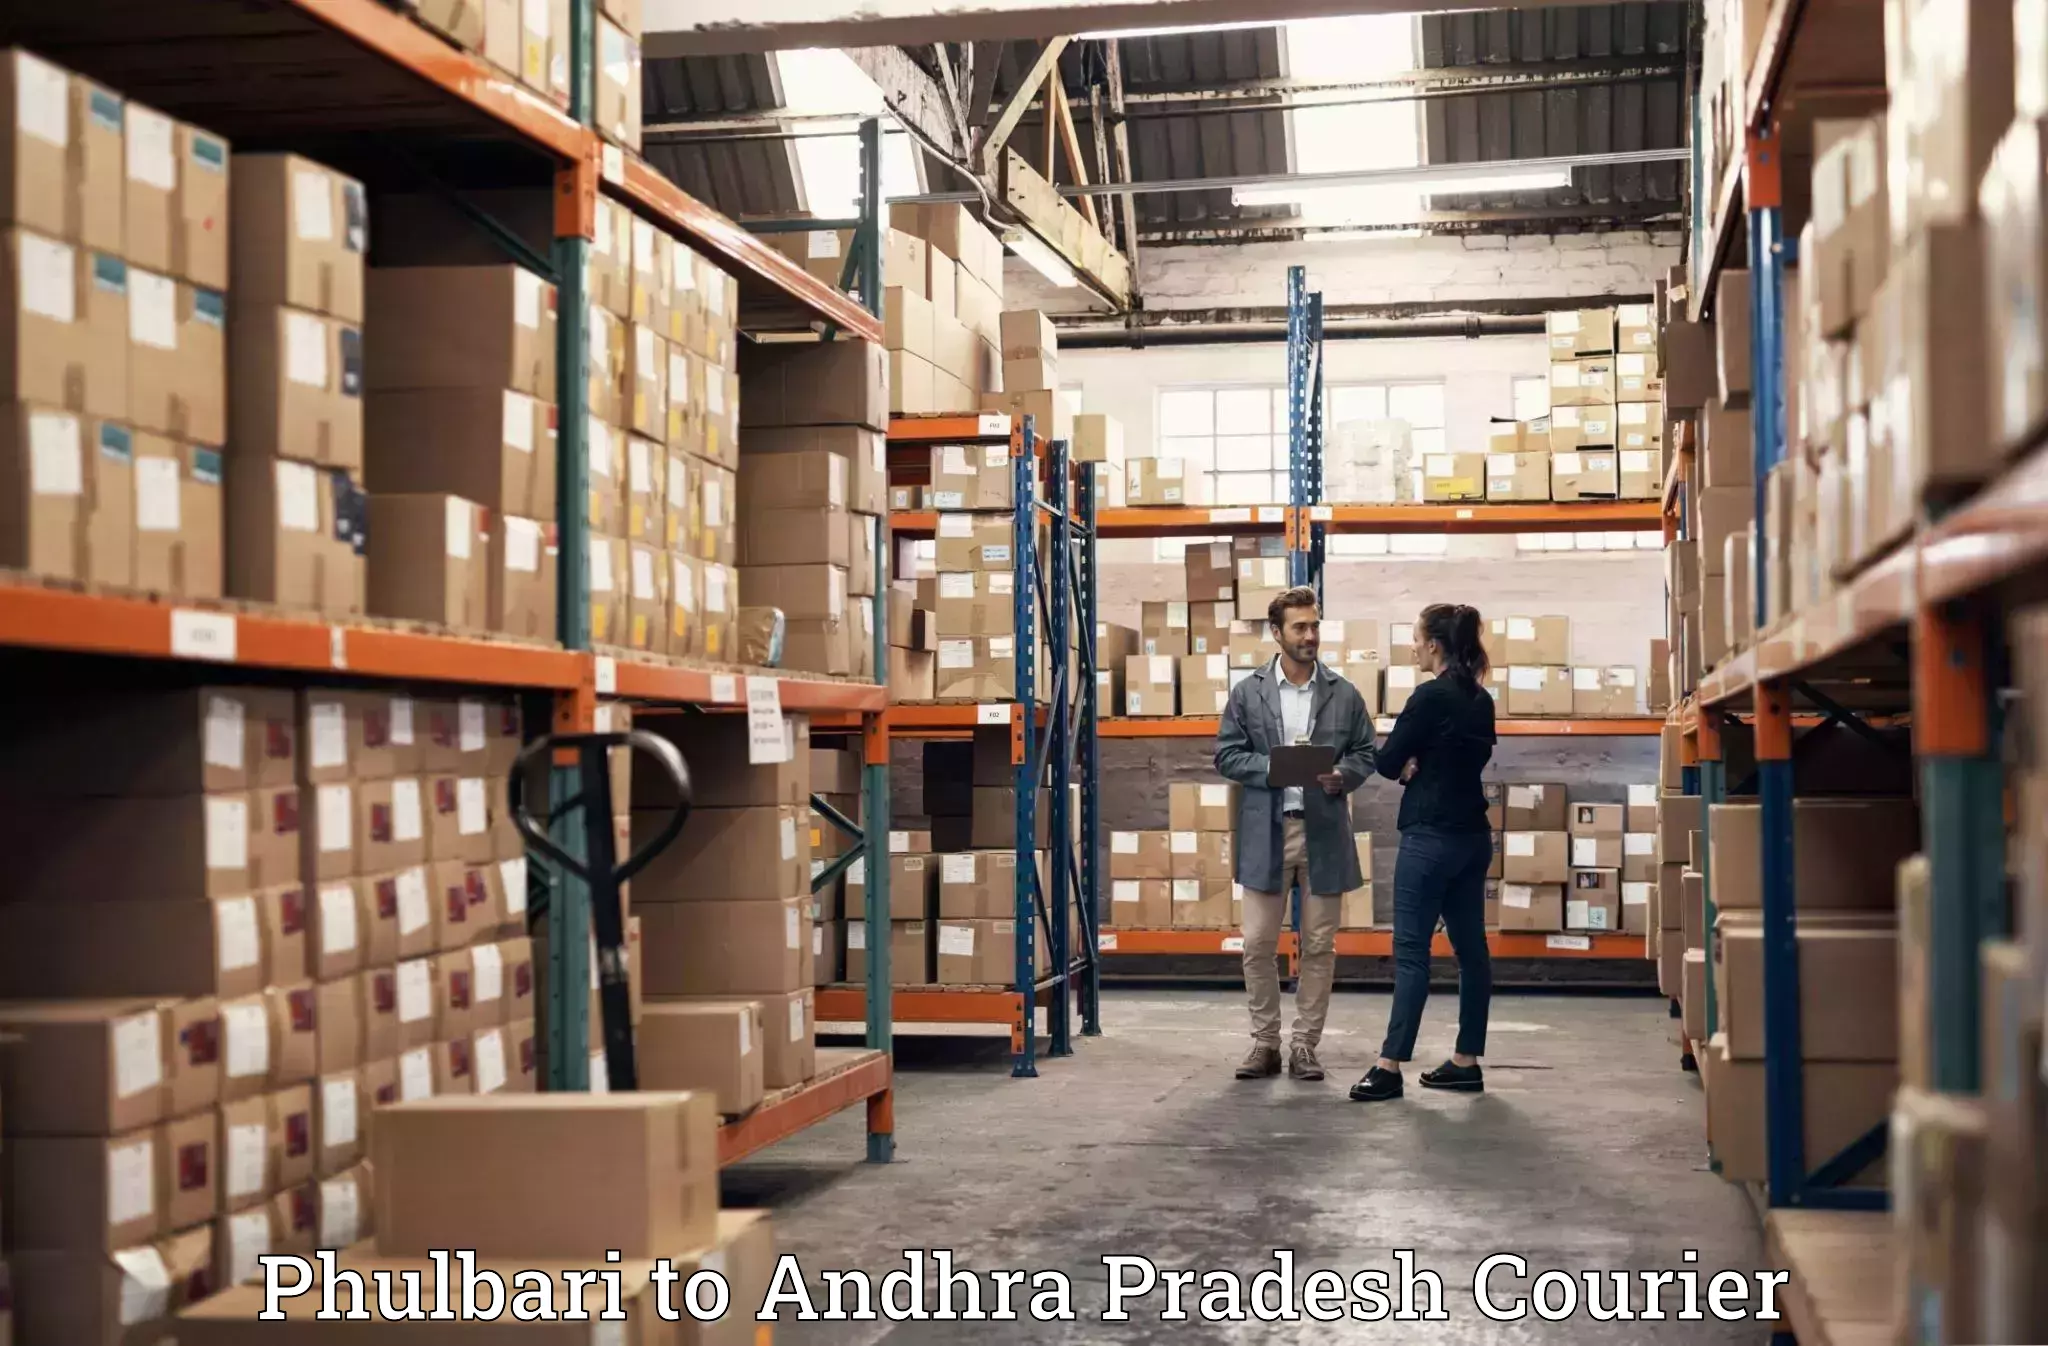 Moving and packing experts Phulbari to Podalakur